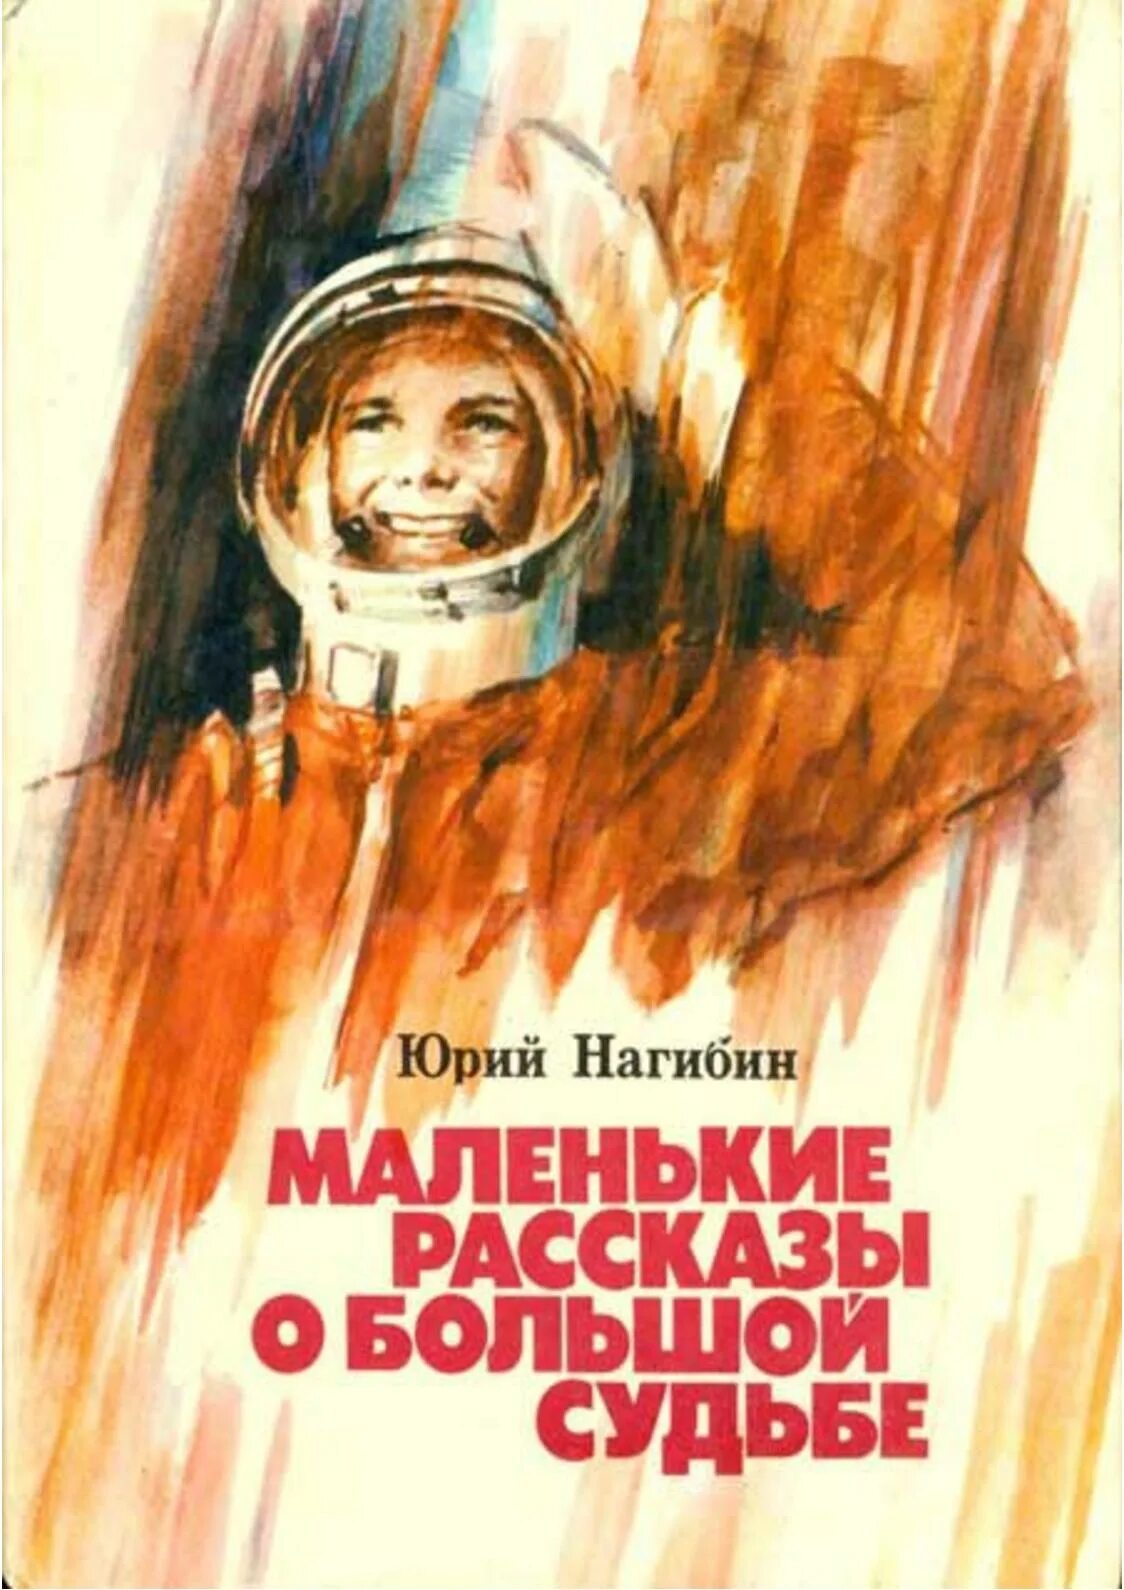 Иллюстрации к книге Юрия Нагибина рассказы о Гагарине. Книга о детстве Гагарина. Как мальчик стал космонавтом л обухова